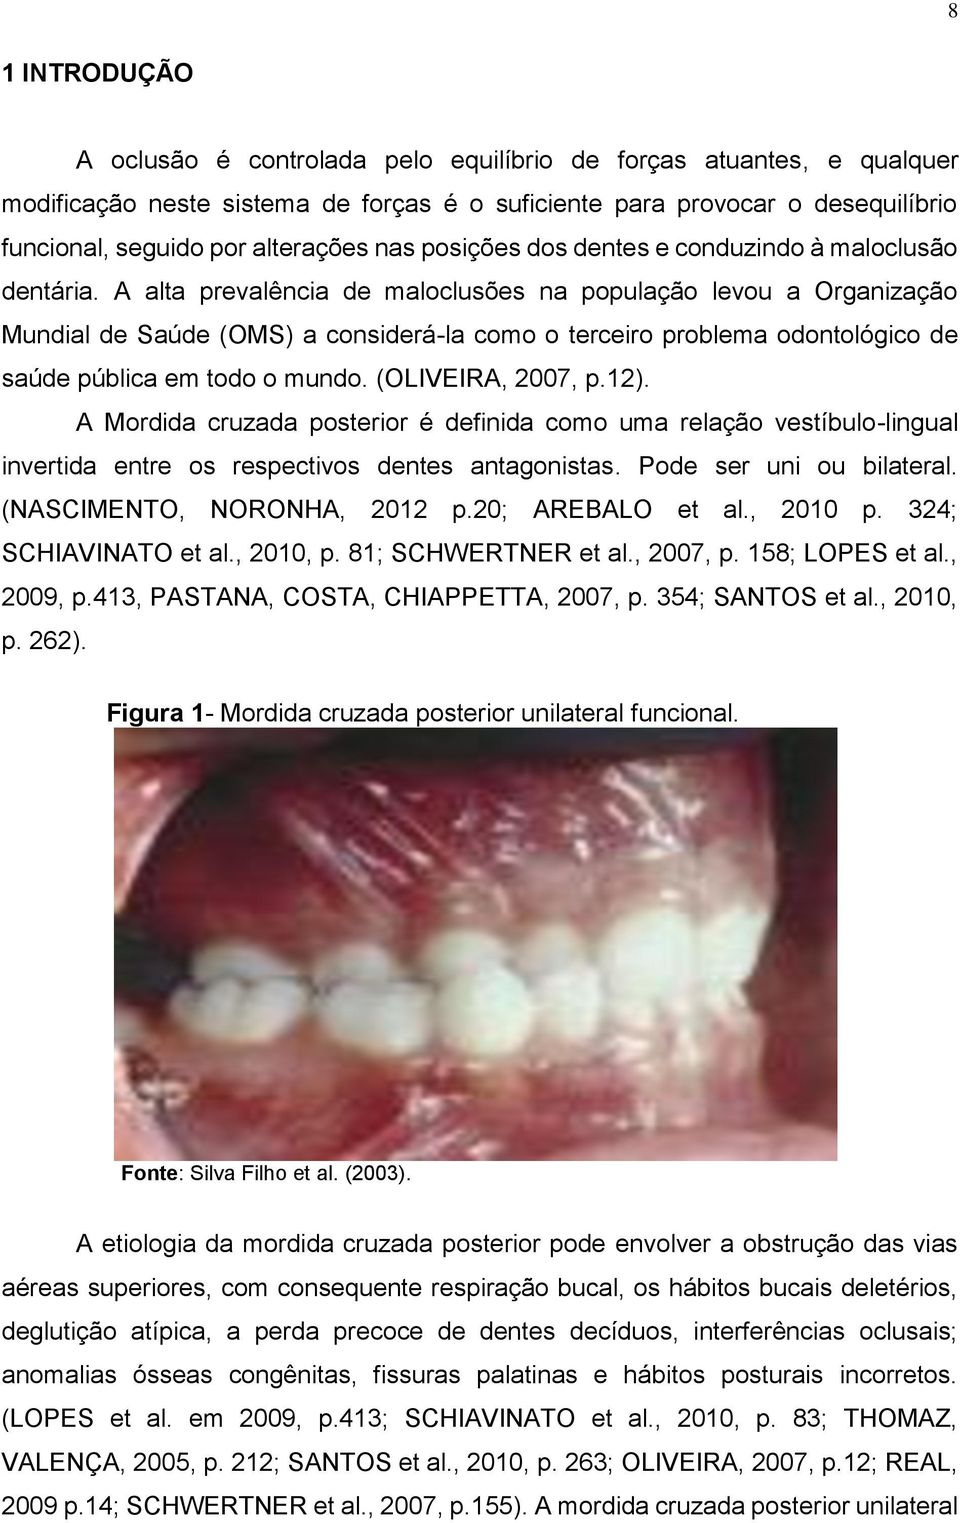 A alta prevalência de maloclusões na população levou a Organização Mundial de Saúde (OMS) a considerá-la como o terceiro problema odontológico de saúde pública em todo o mundo. (OLIVEIRA, 2007, p.12).